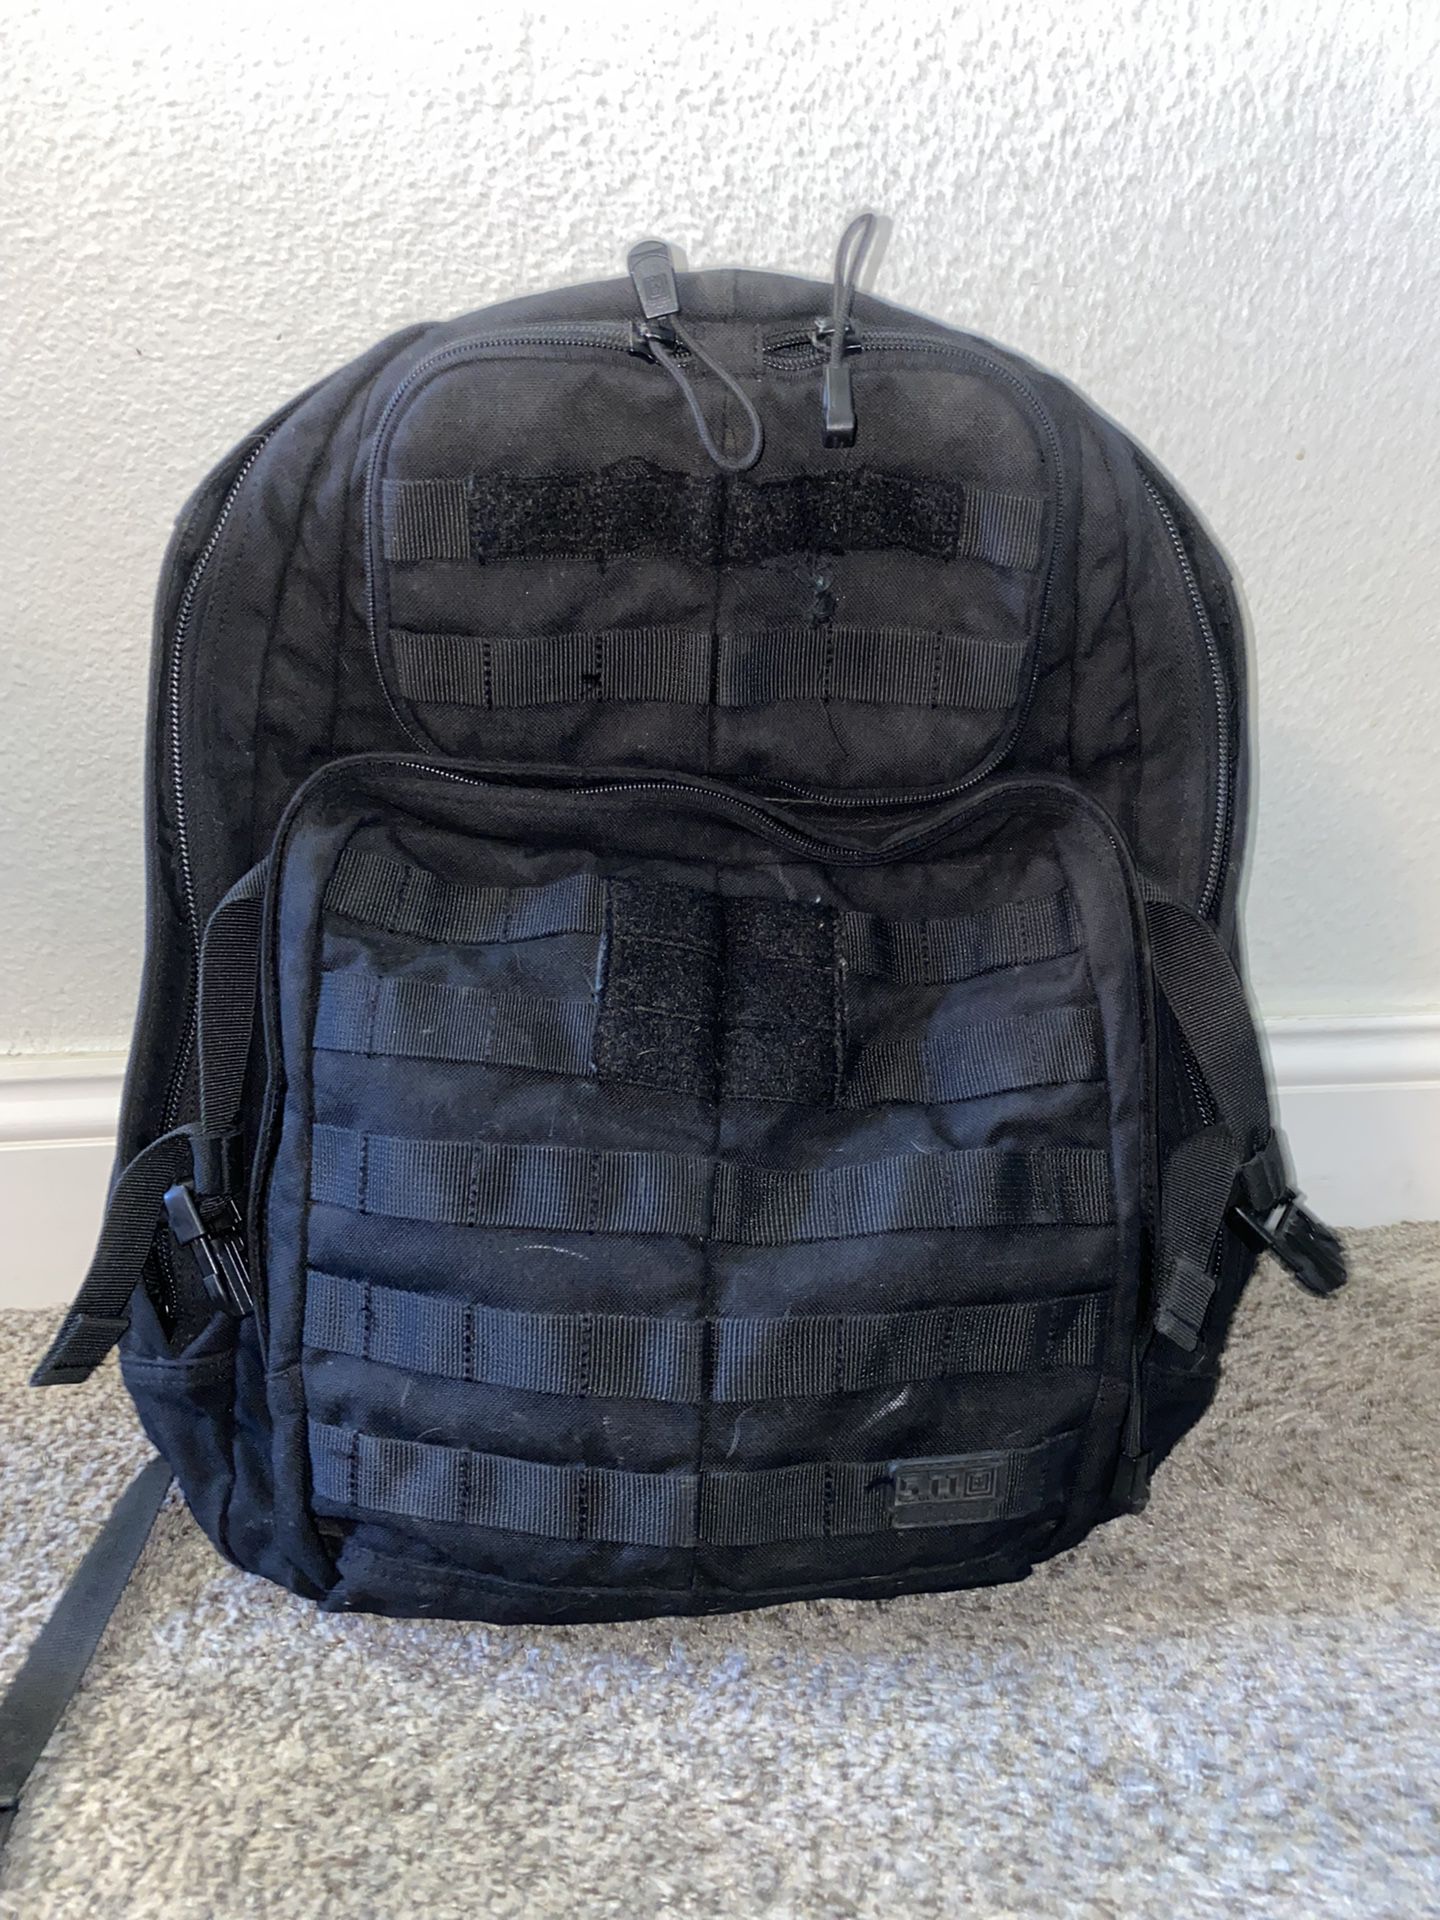 5.11 Tactical Backpack 24hr Model 